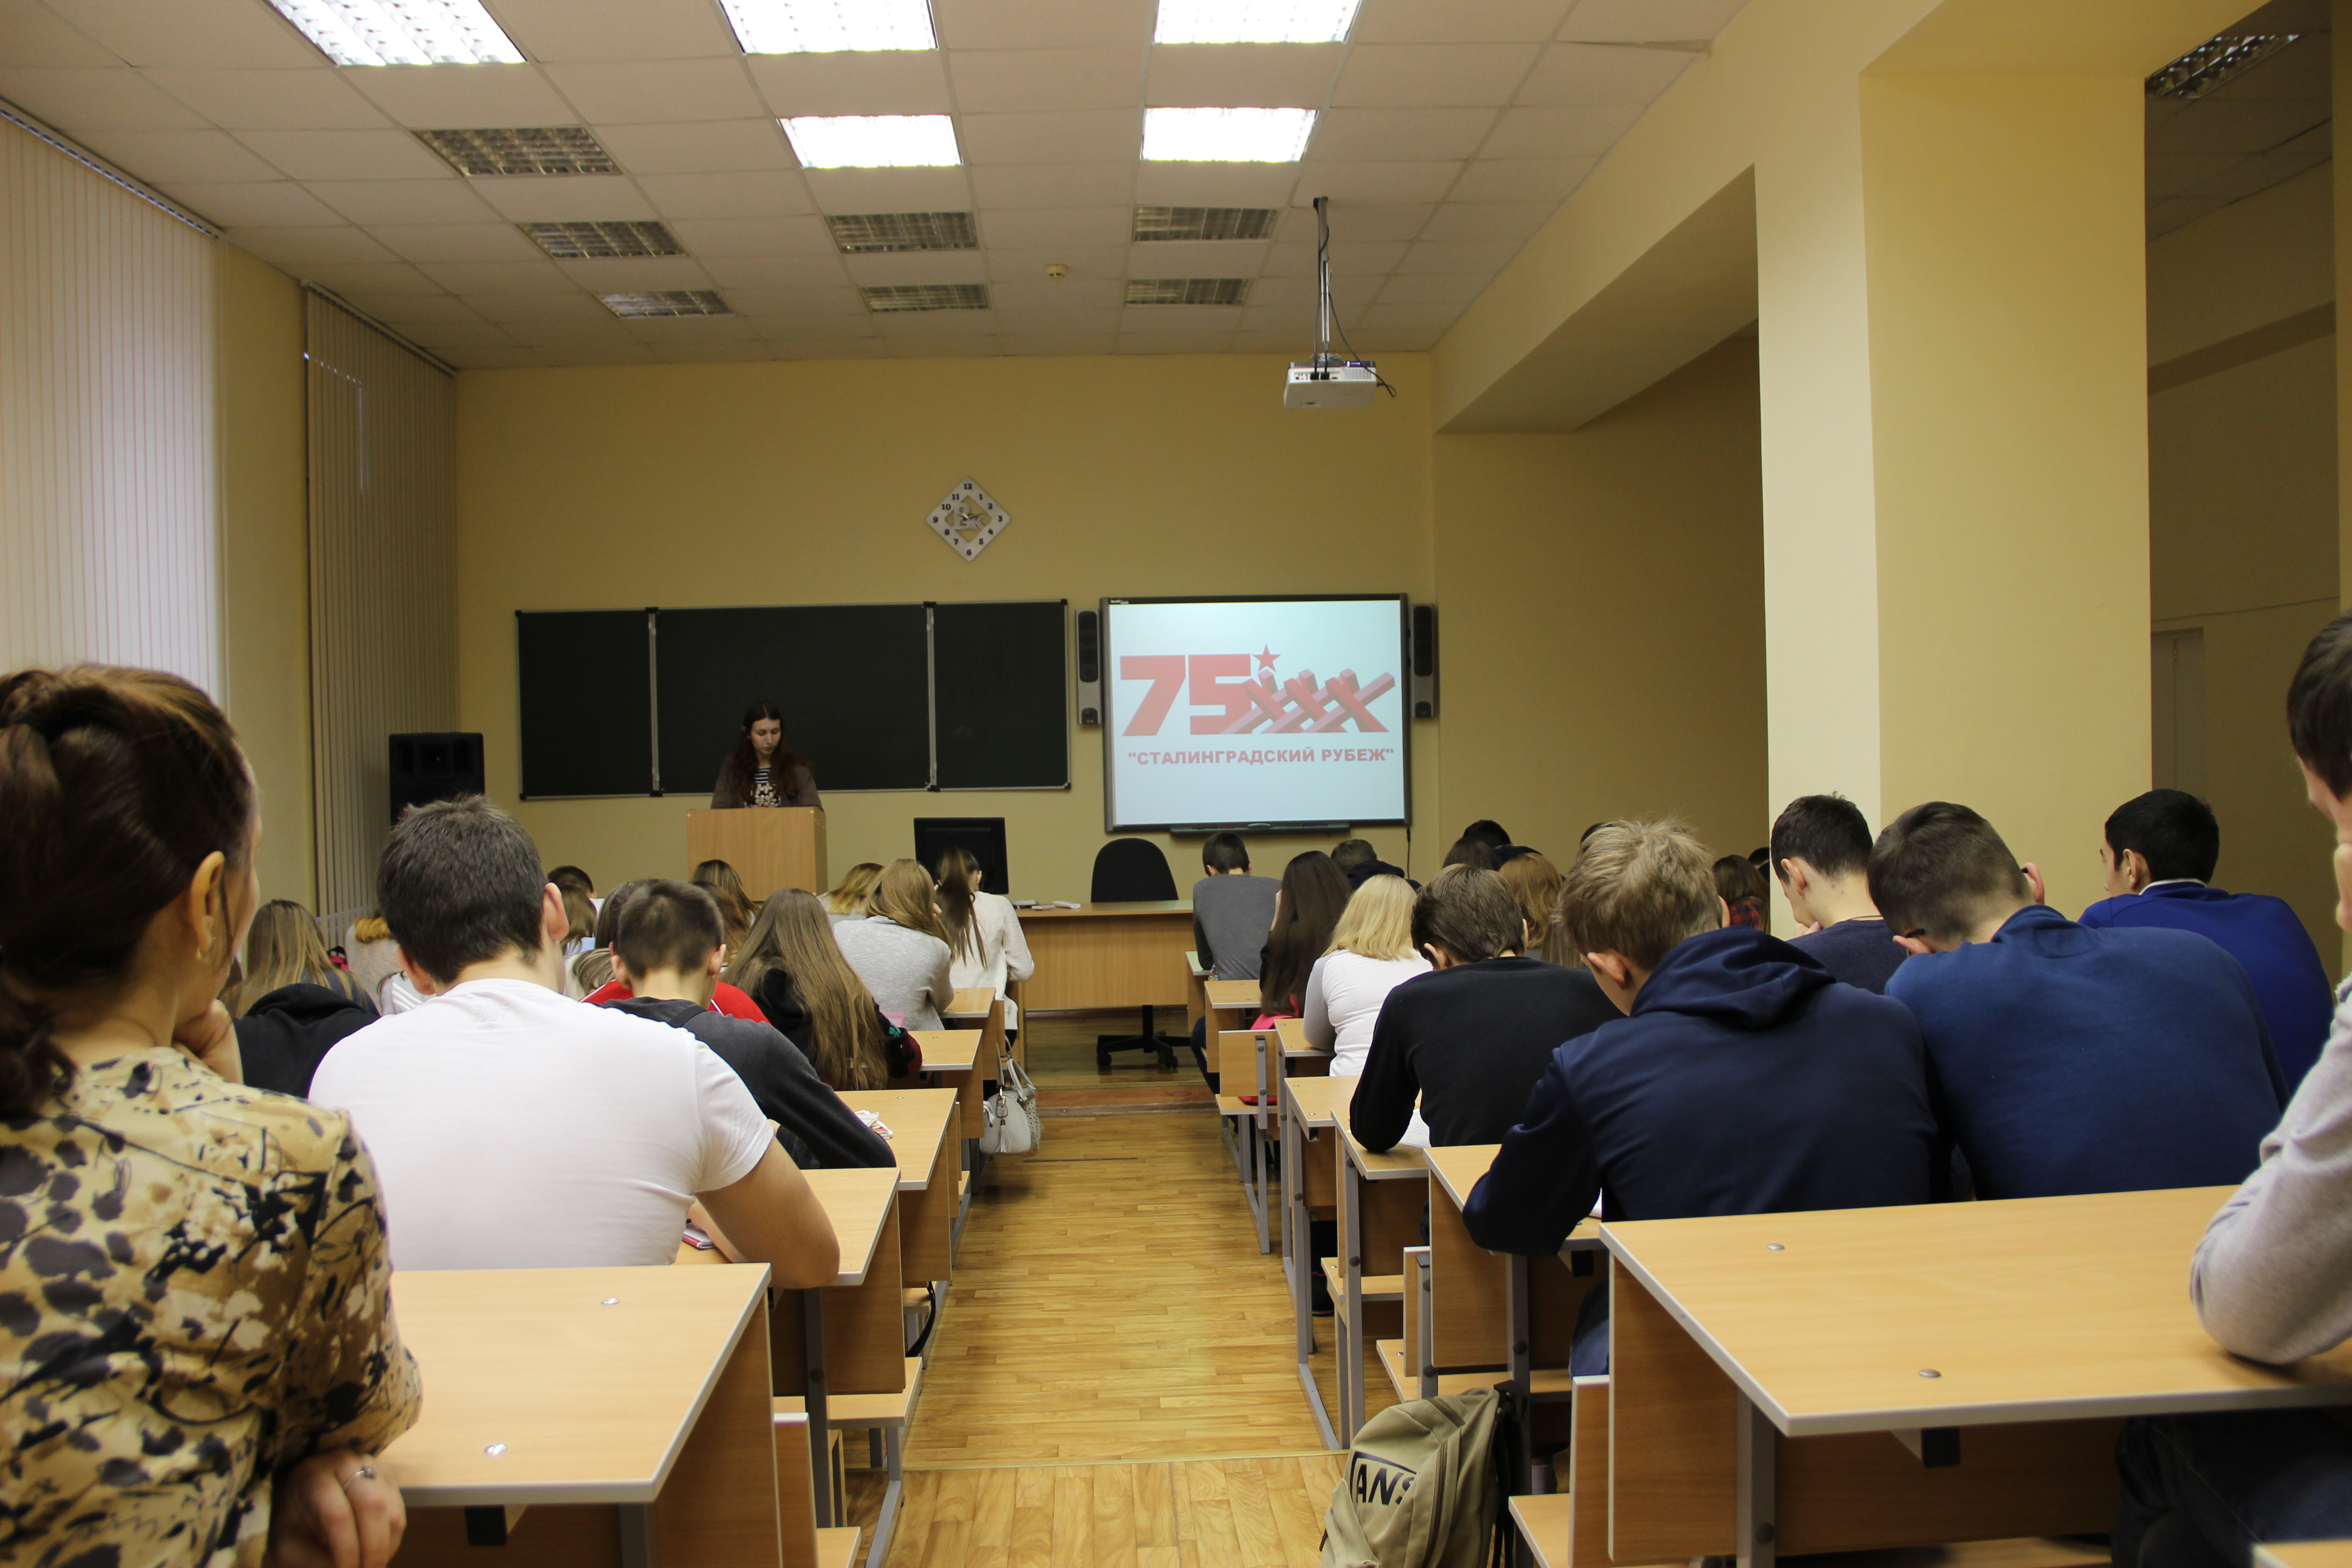 Студенты 1-2 курсов приняли участие в памятном мероприятии – виртуальной экскурсии «Сталинградский рубеж».